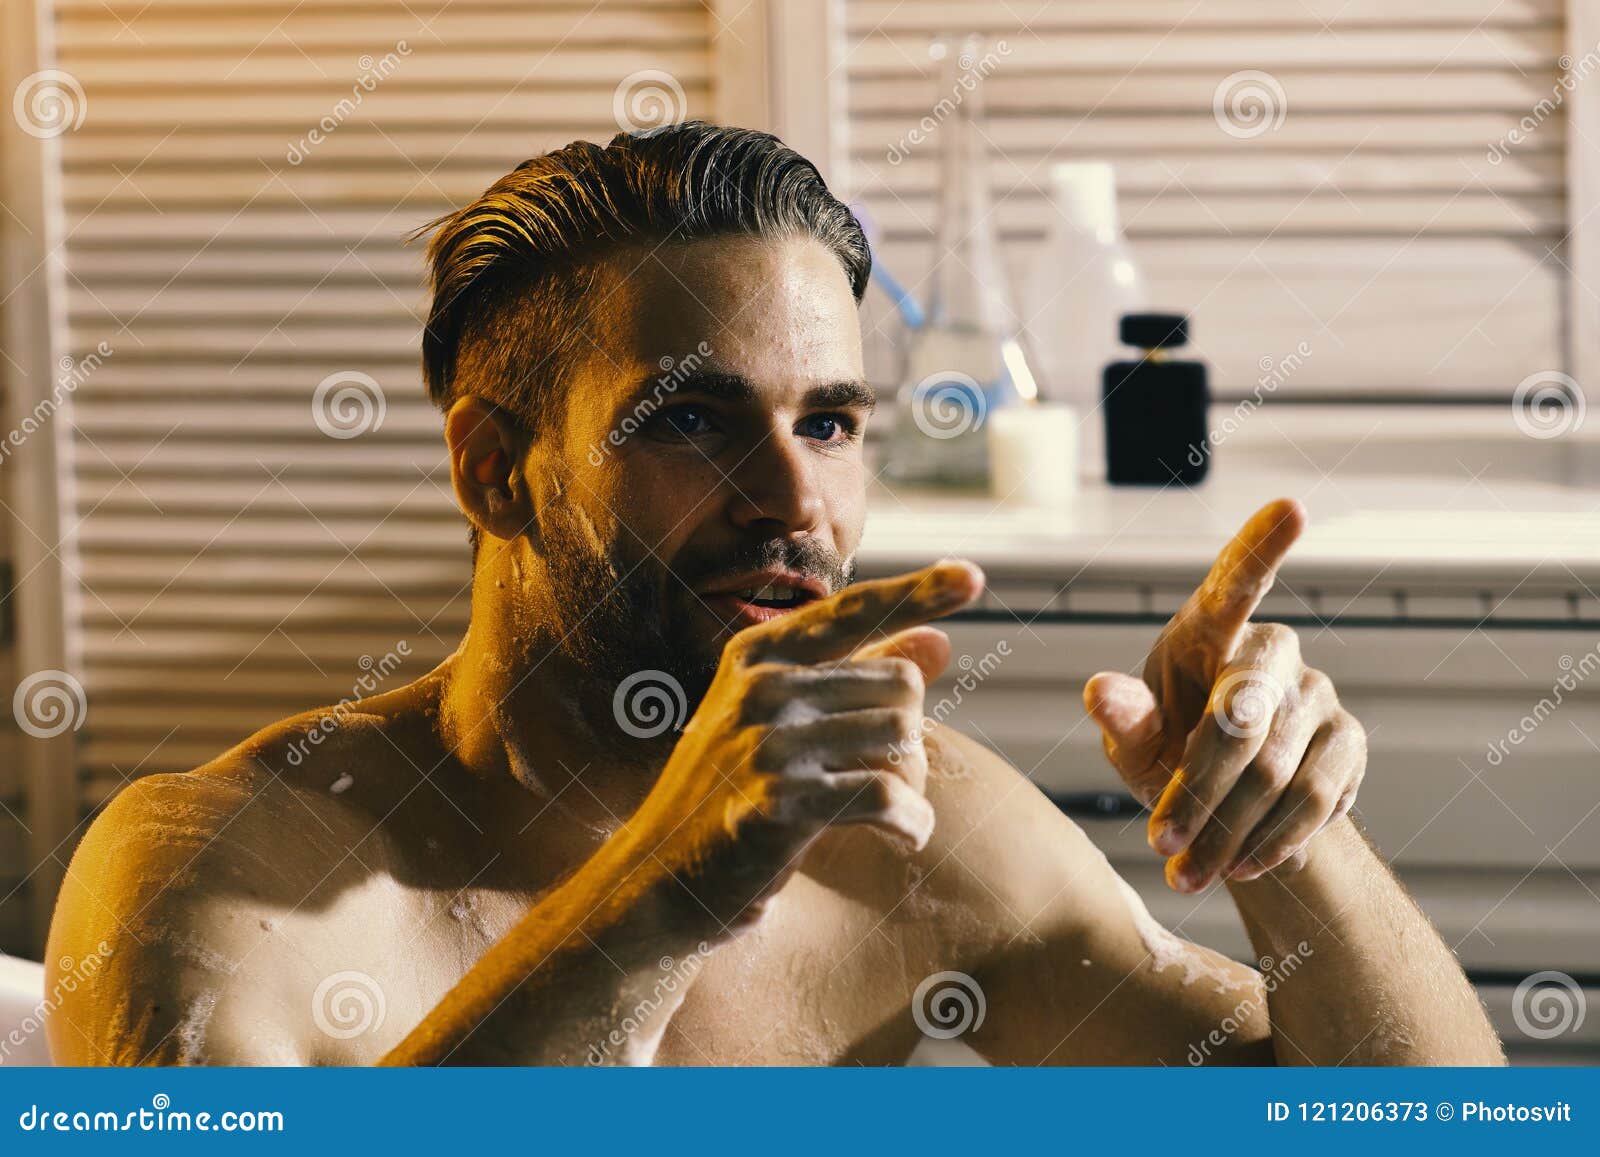 Обнаженная баба курит в ванной (частное фото) – Telegraph